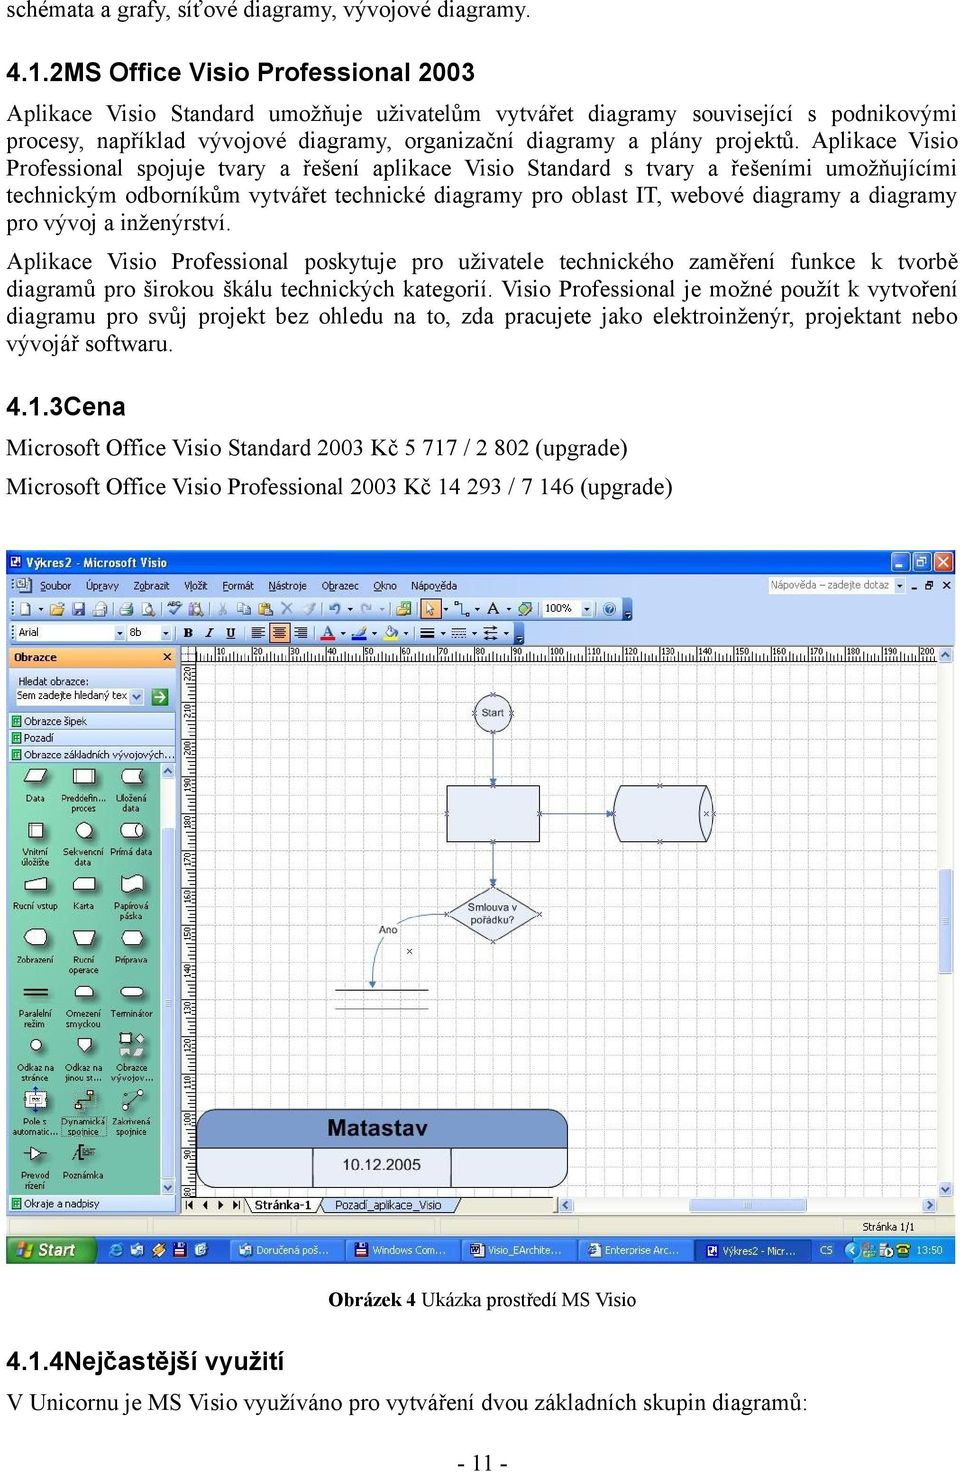 Aplikace Visio Professional spojuje tvary a řešení aplikace Visio Standard s tvary a řešeními umožňujícími technickým odborníkům vytvářet technické diagramy pro oblast IT, webové diagramy a diagramy